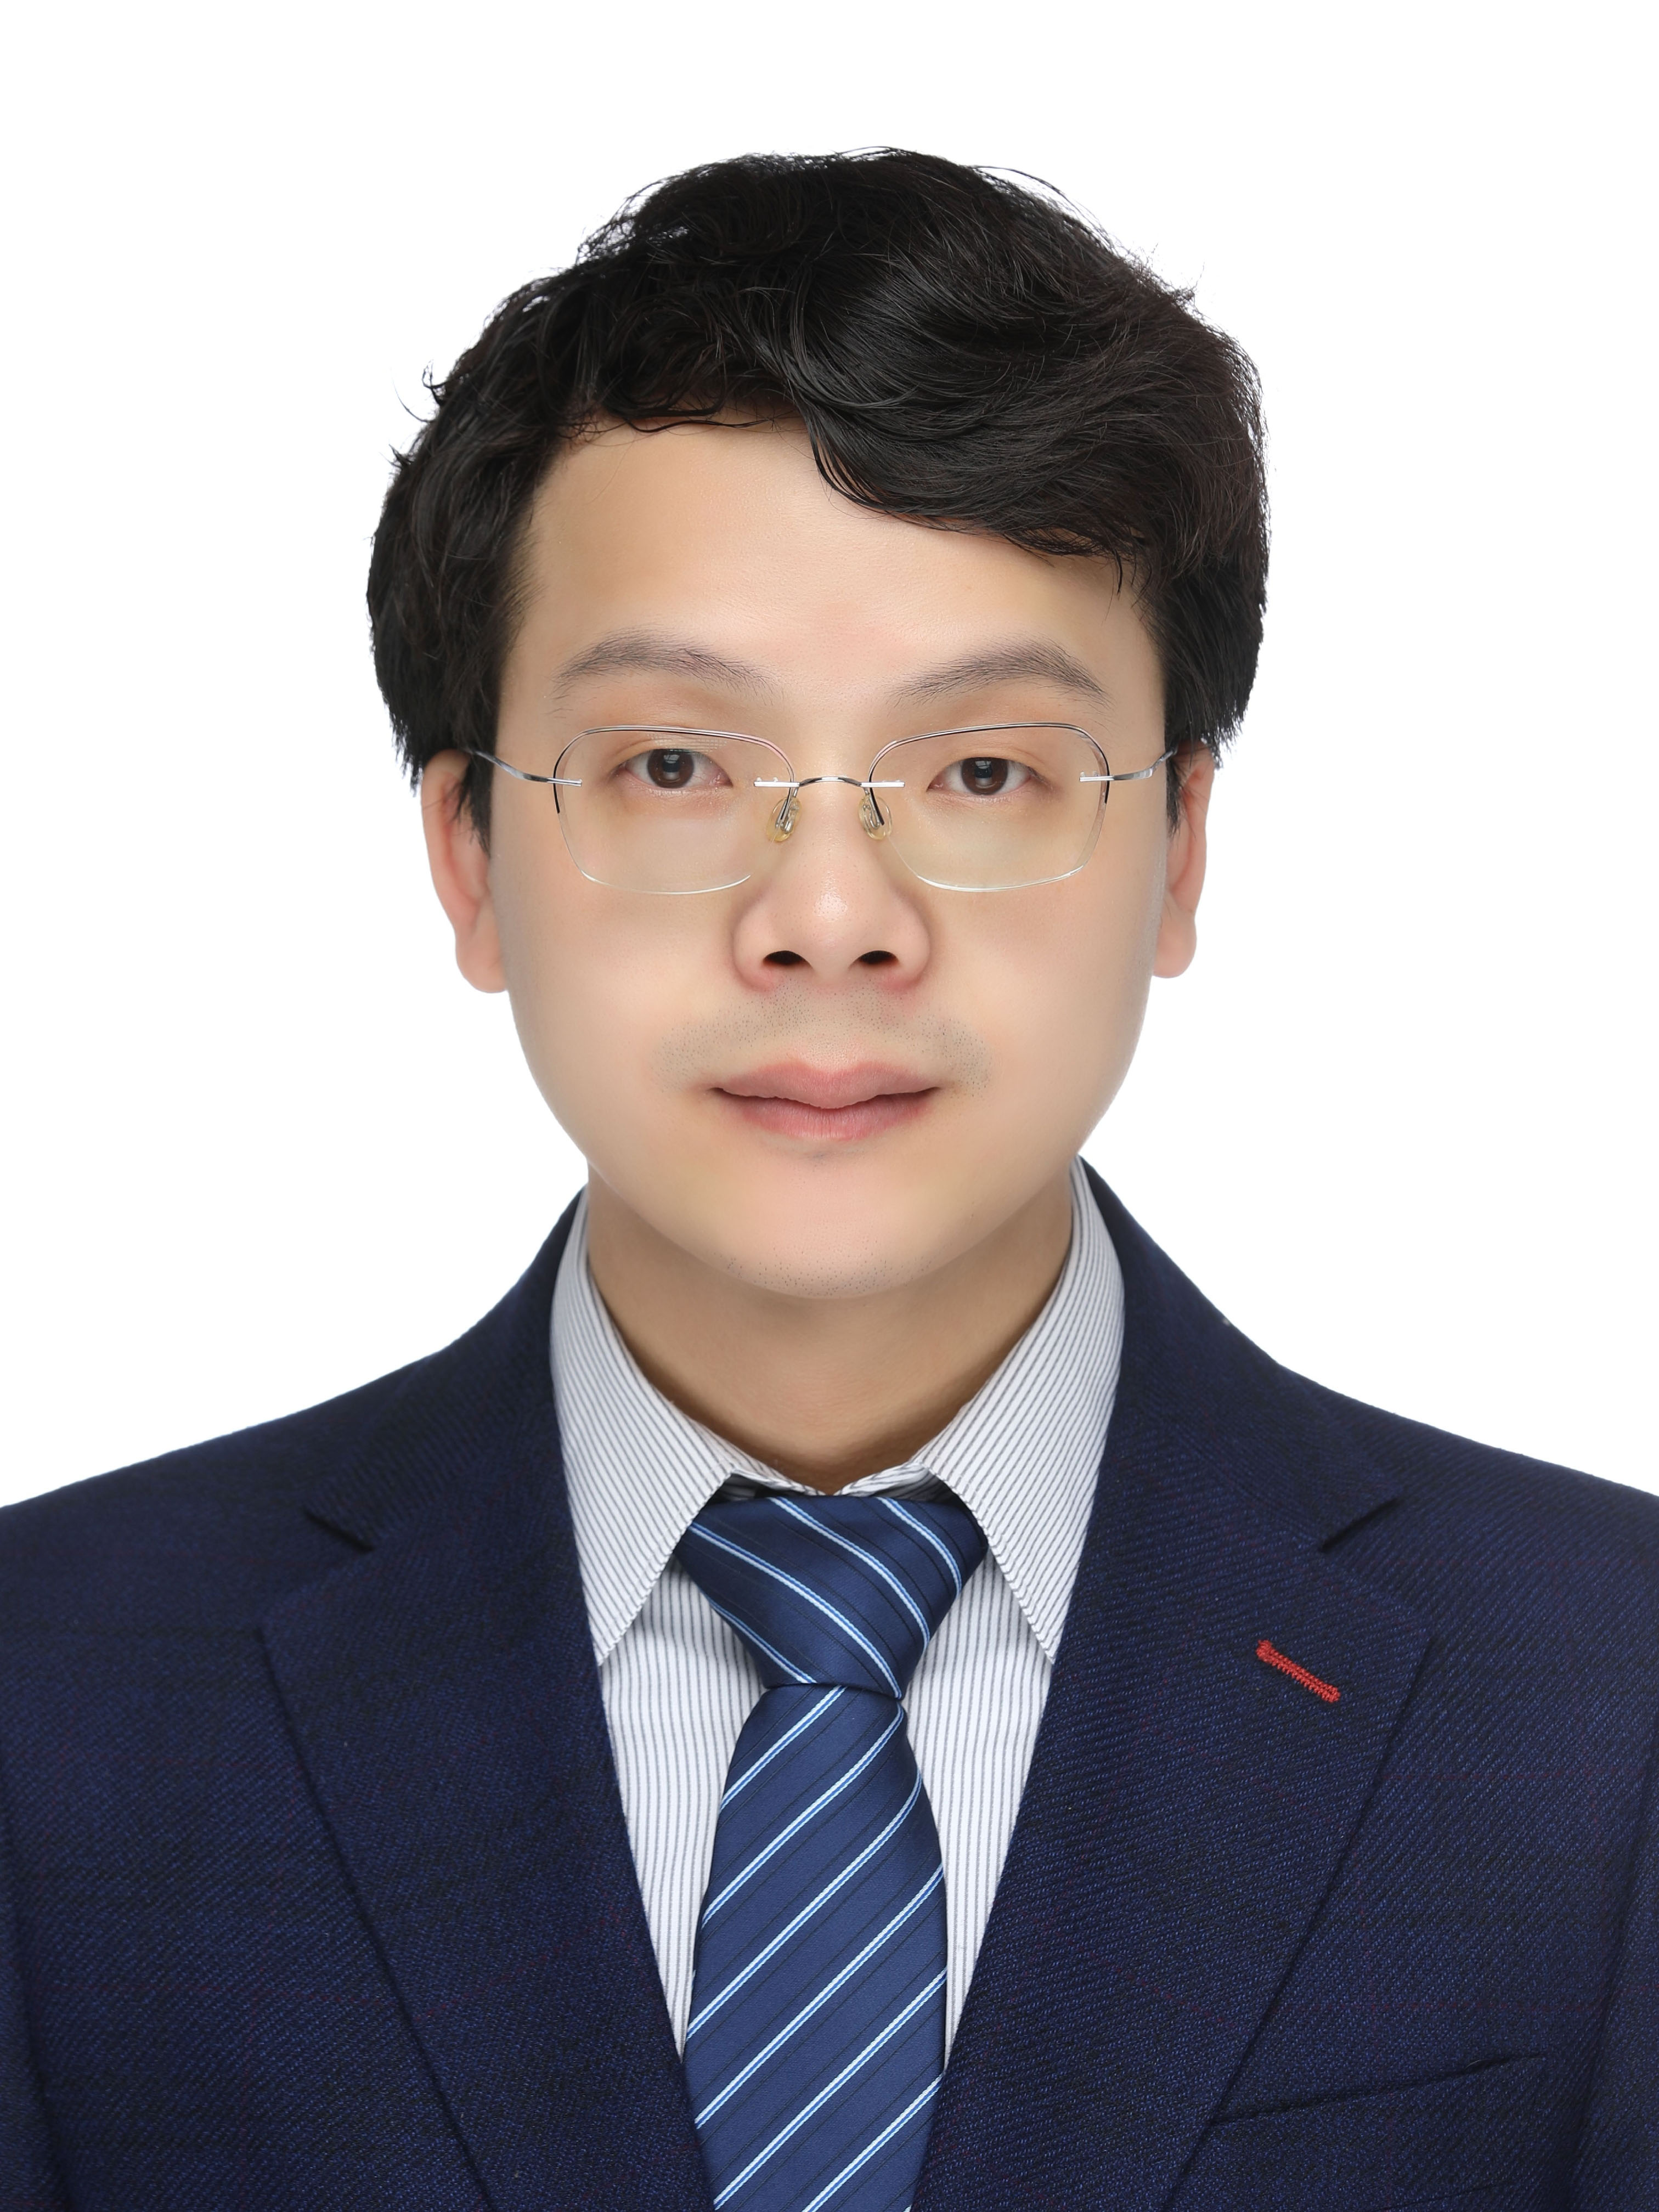 Dr. Zhiqiang Miao